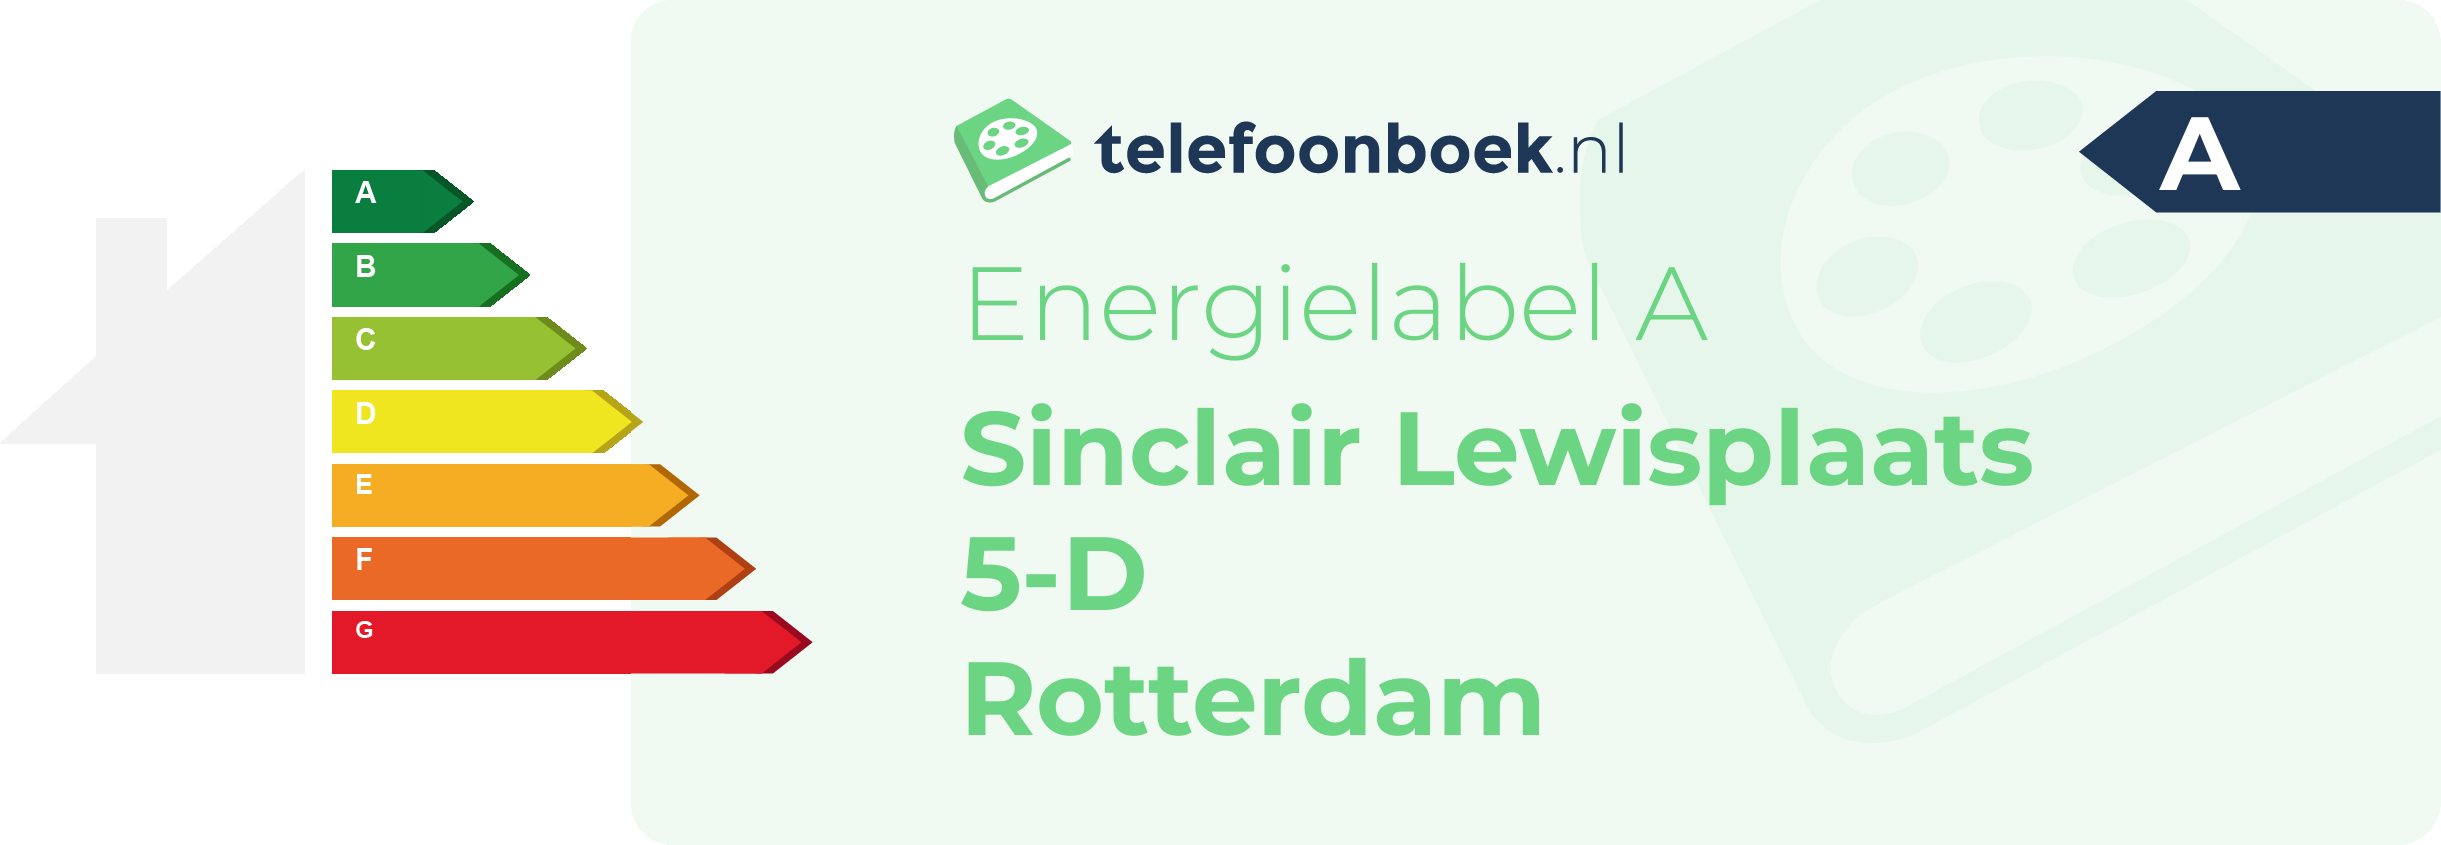 Energielabel Sinclair Lewisplaats 5-D Rotterdam